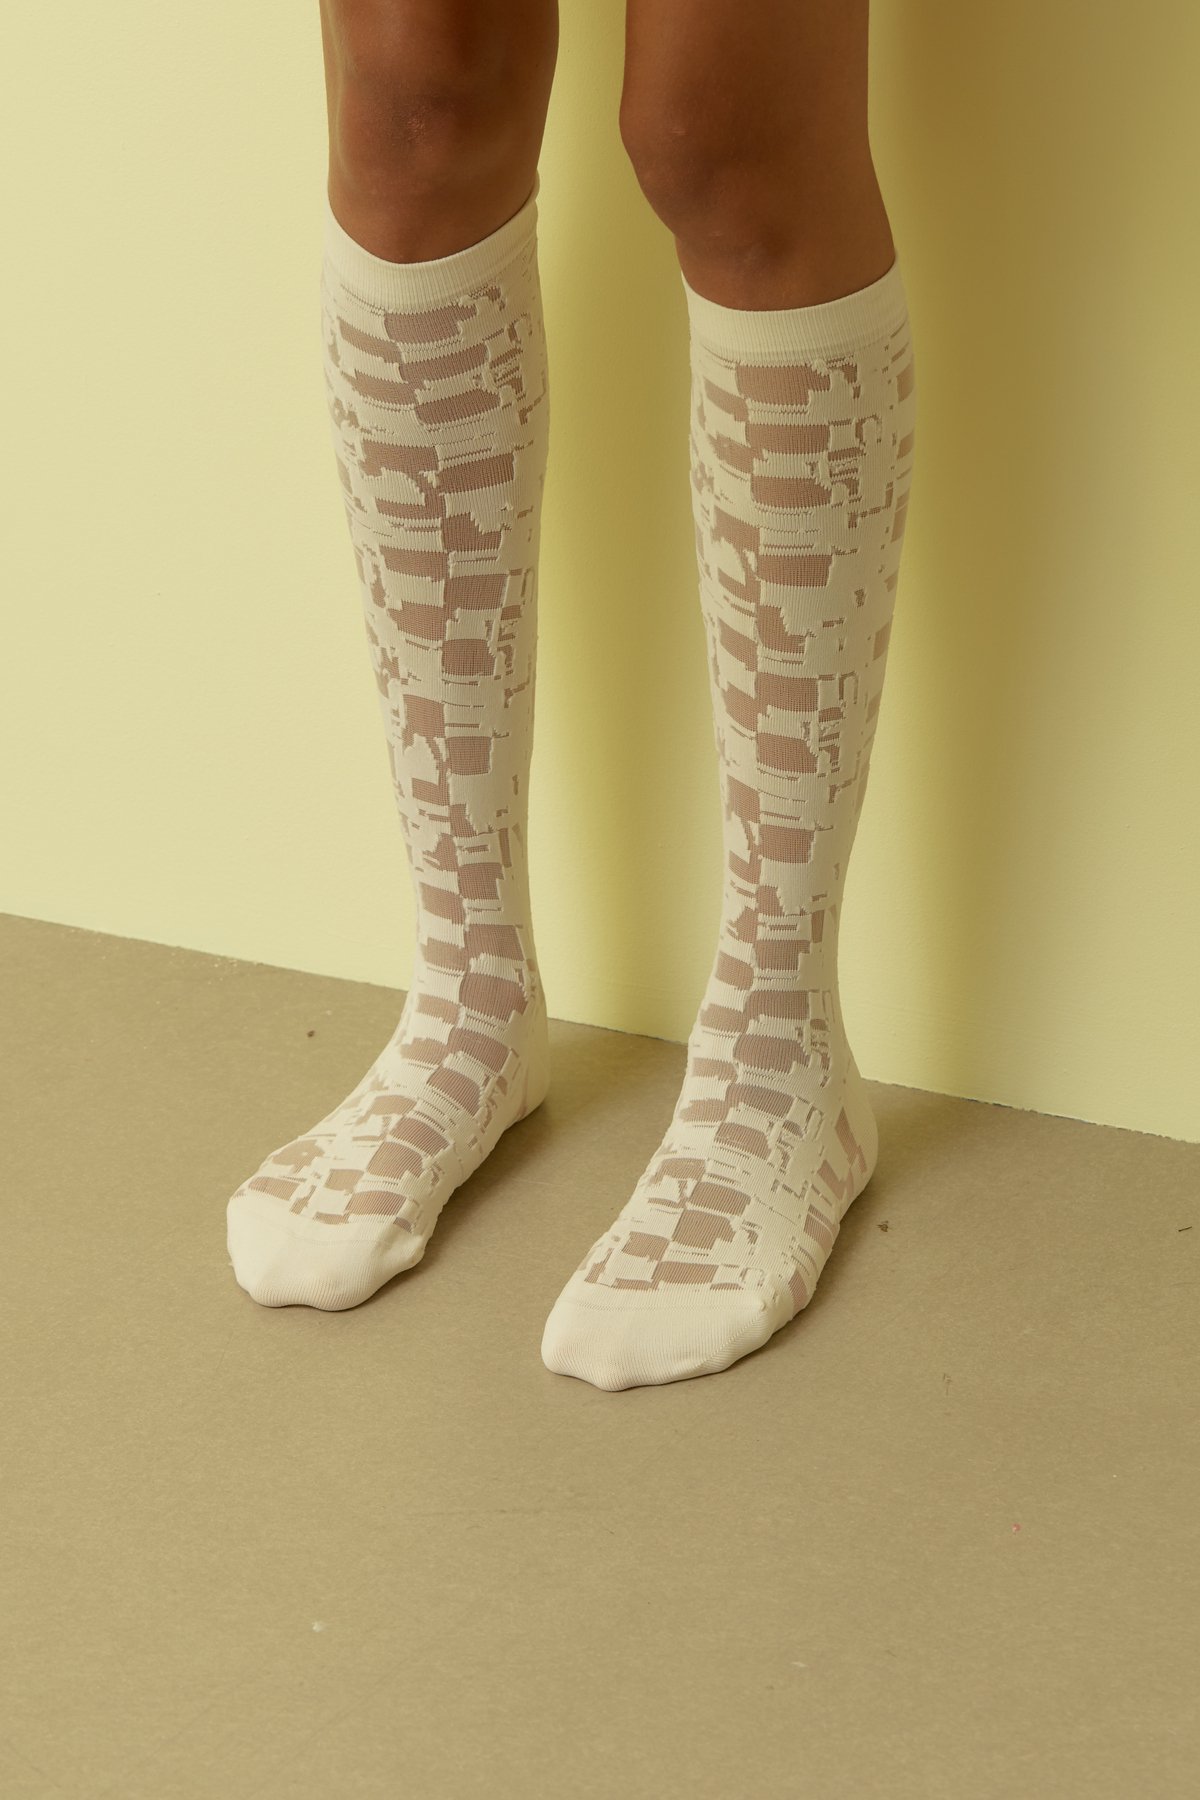 HENRIK VIBSKOV / Unboxing Socks Femme / Transparent White